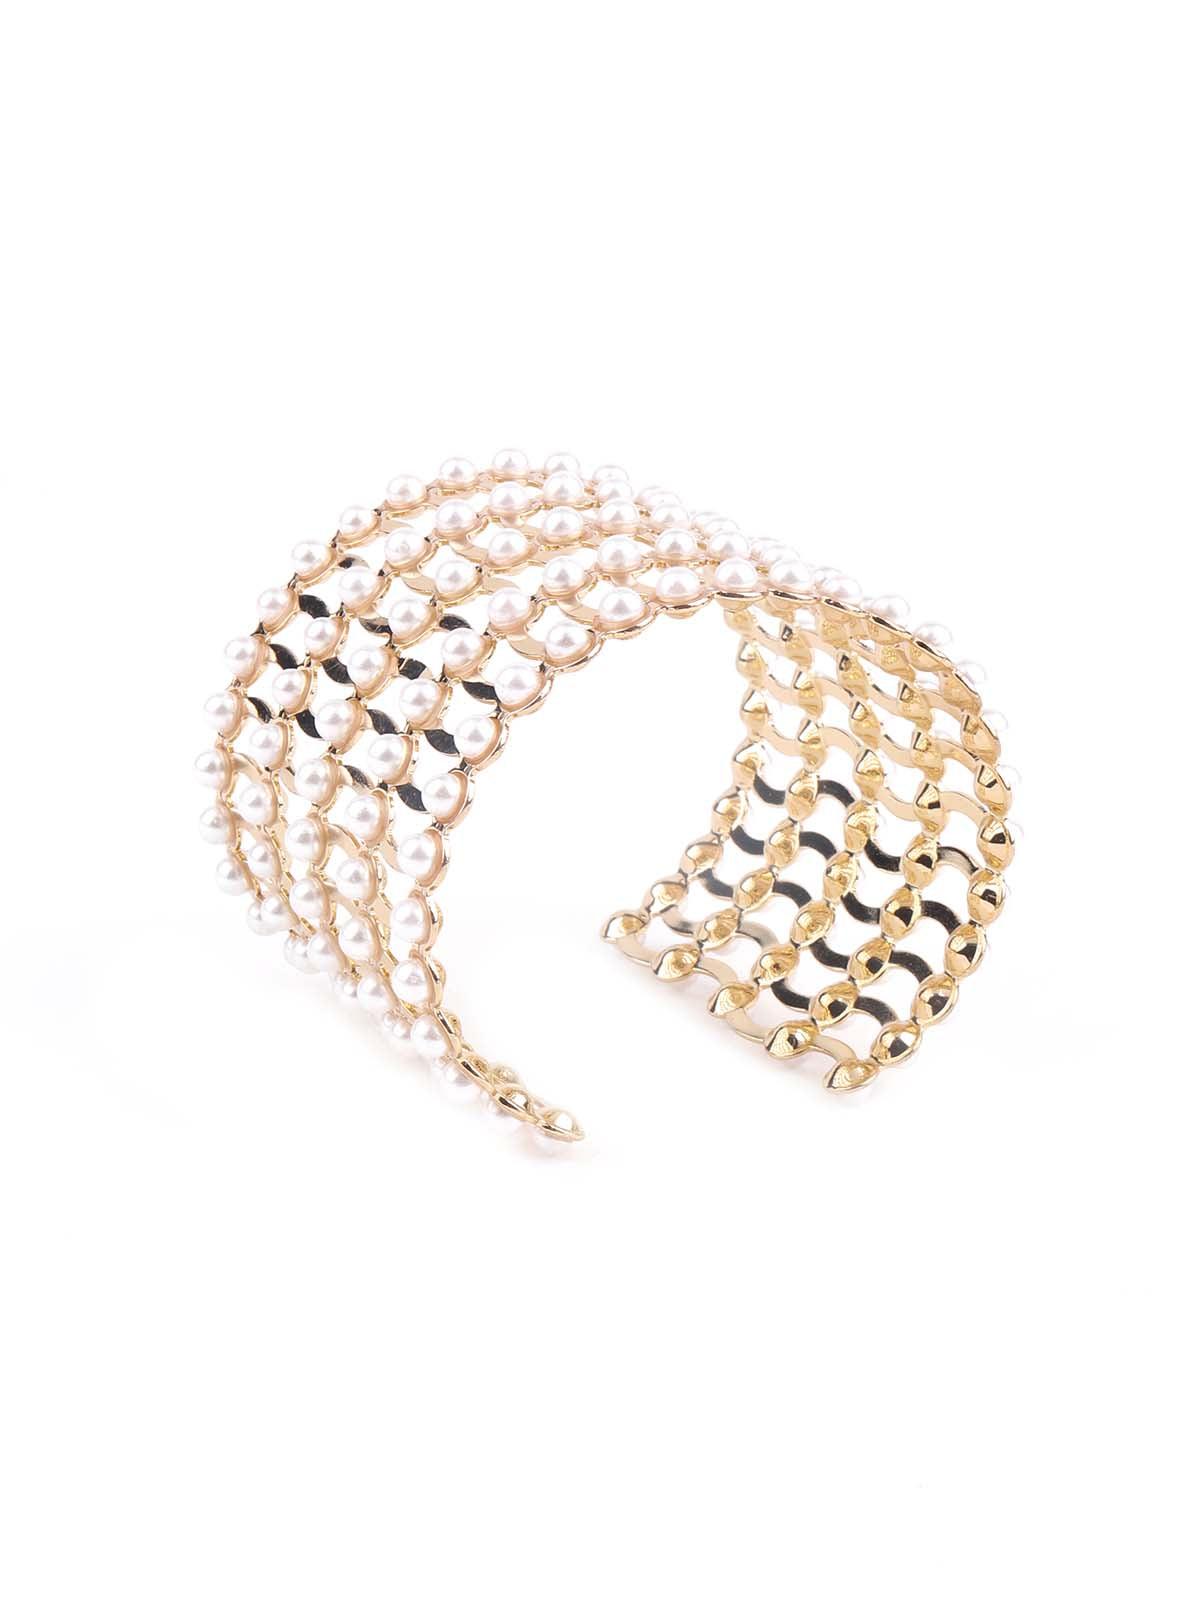 Women's Wide Gold Tone Hand Cuff Bracelet - Odette